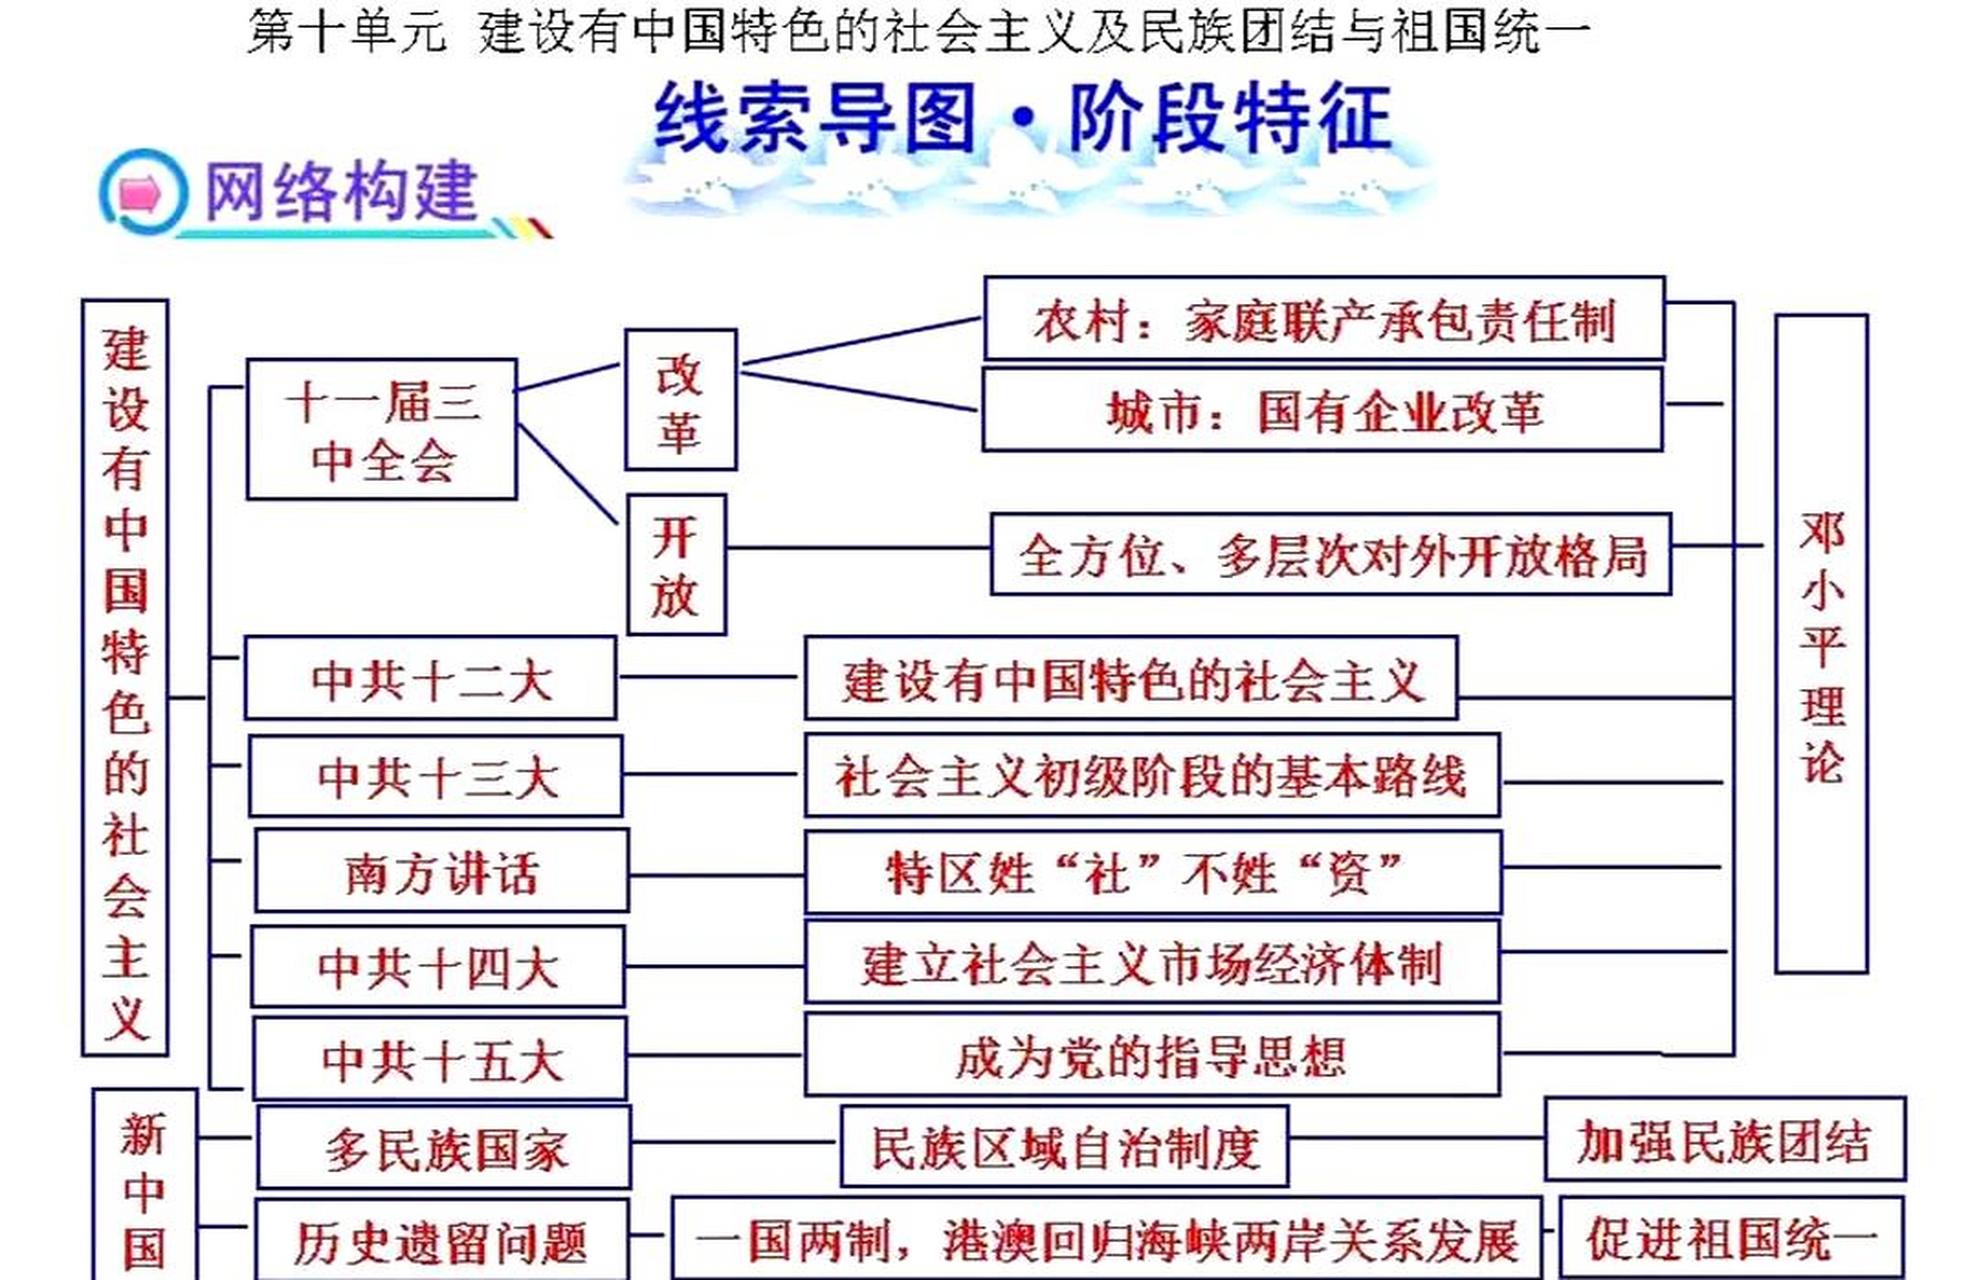 通过9个单元的历史思维导图,我们可以简明扼要地了解中国特色社会主义